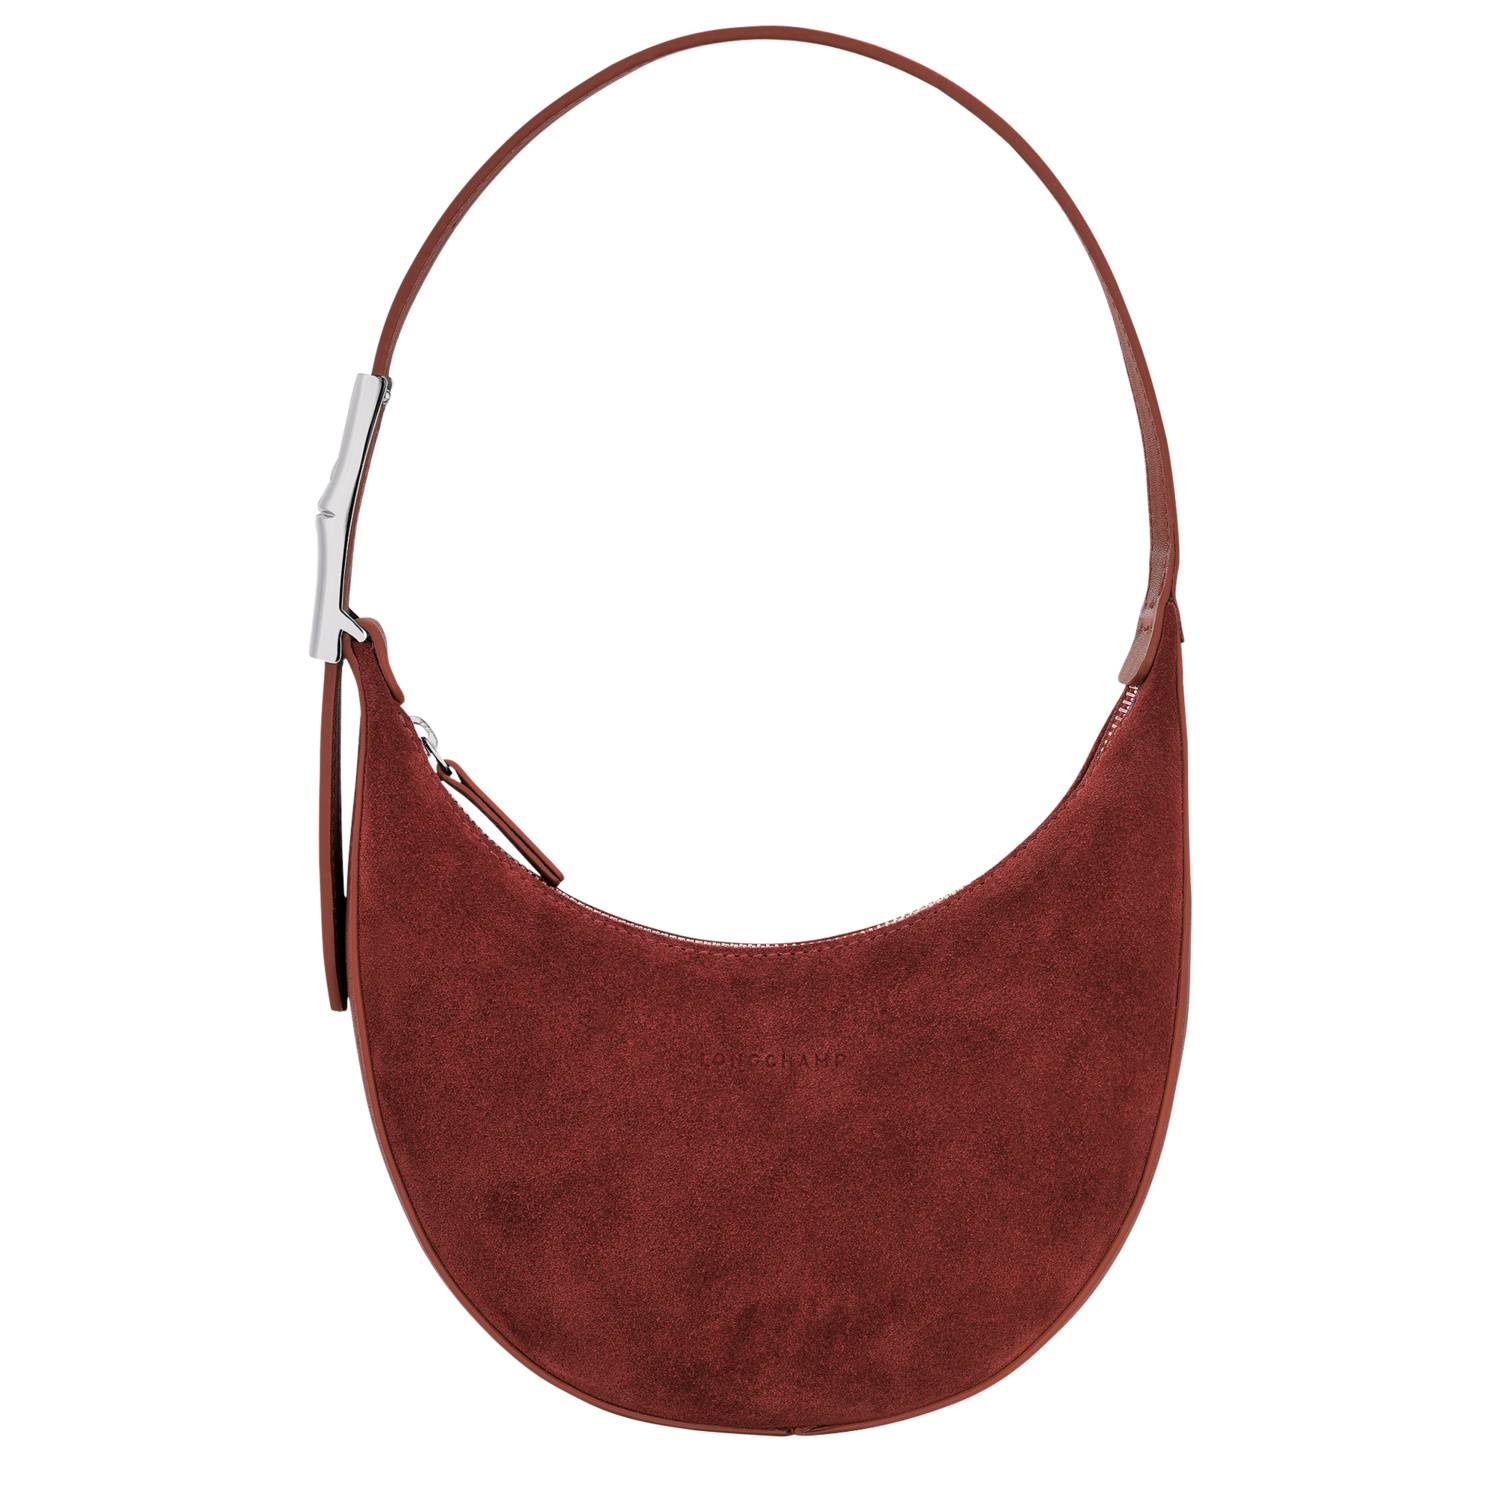 Longchamp Hobo Bags for Women for sale